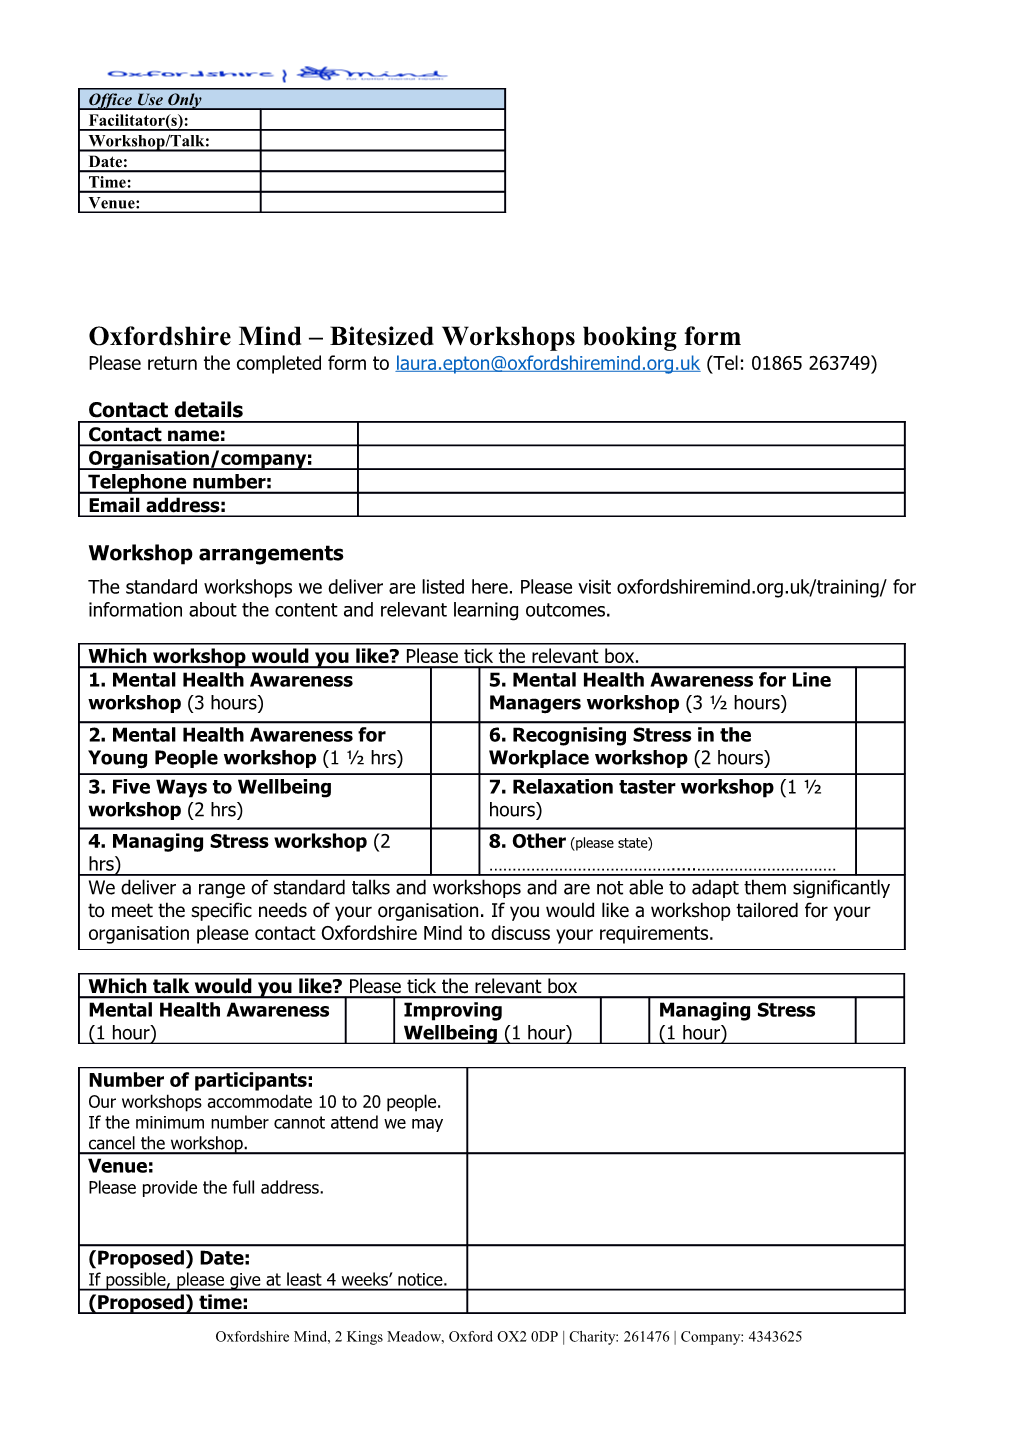 Oxfordshire Mind Bitesized Workshops Booking Form